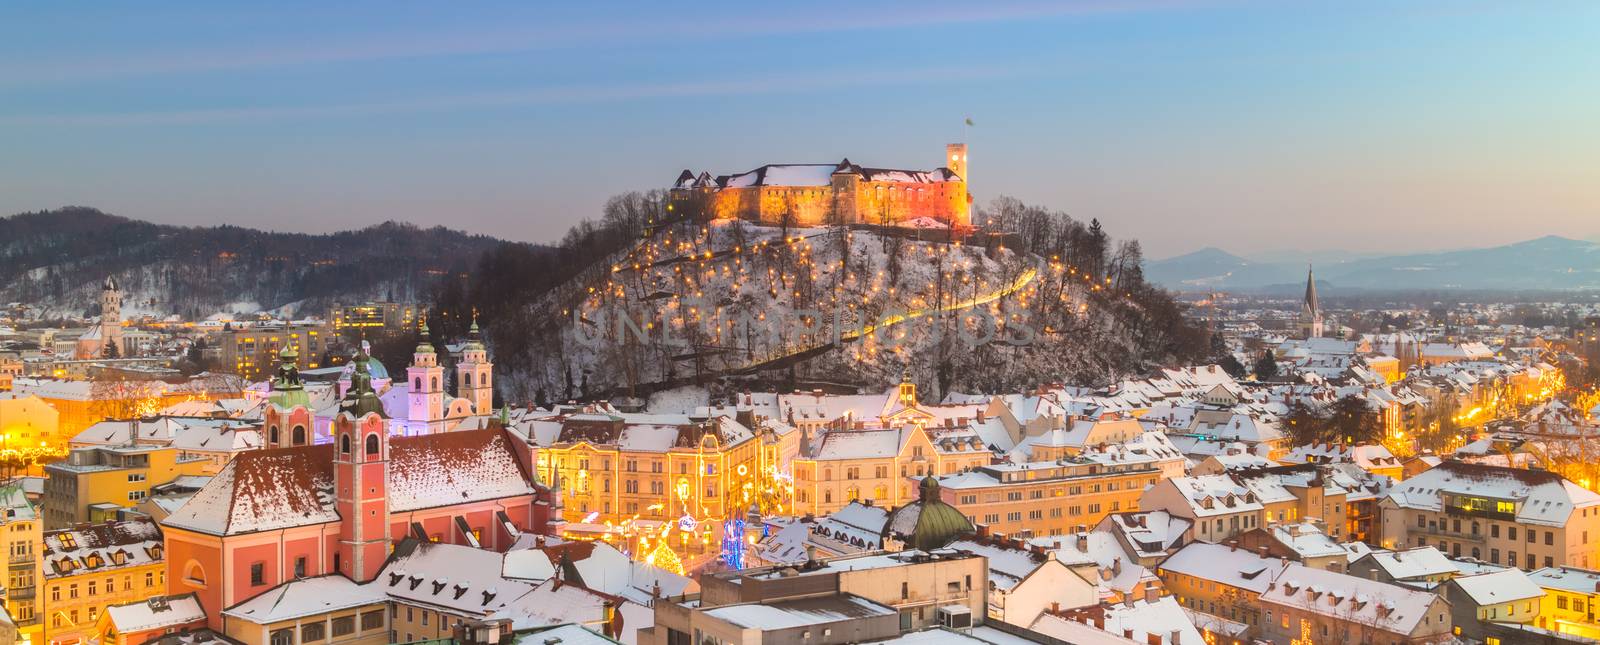 Panorama of Ljubljana in winter. Slovenia, Europe. by kasto